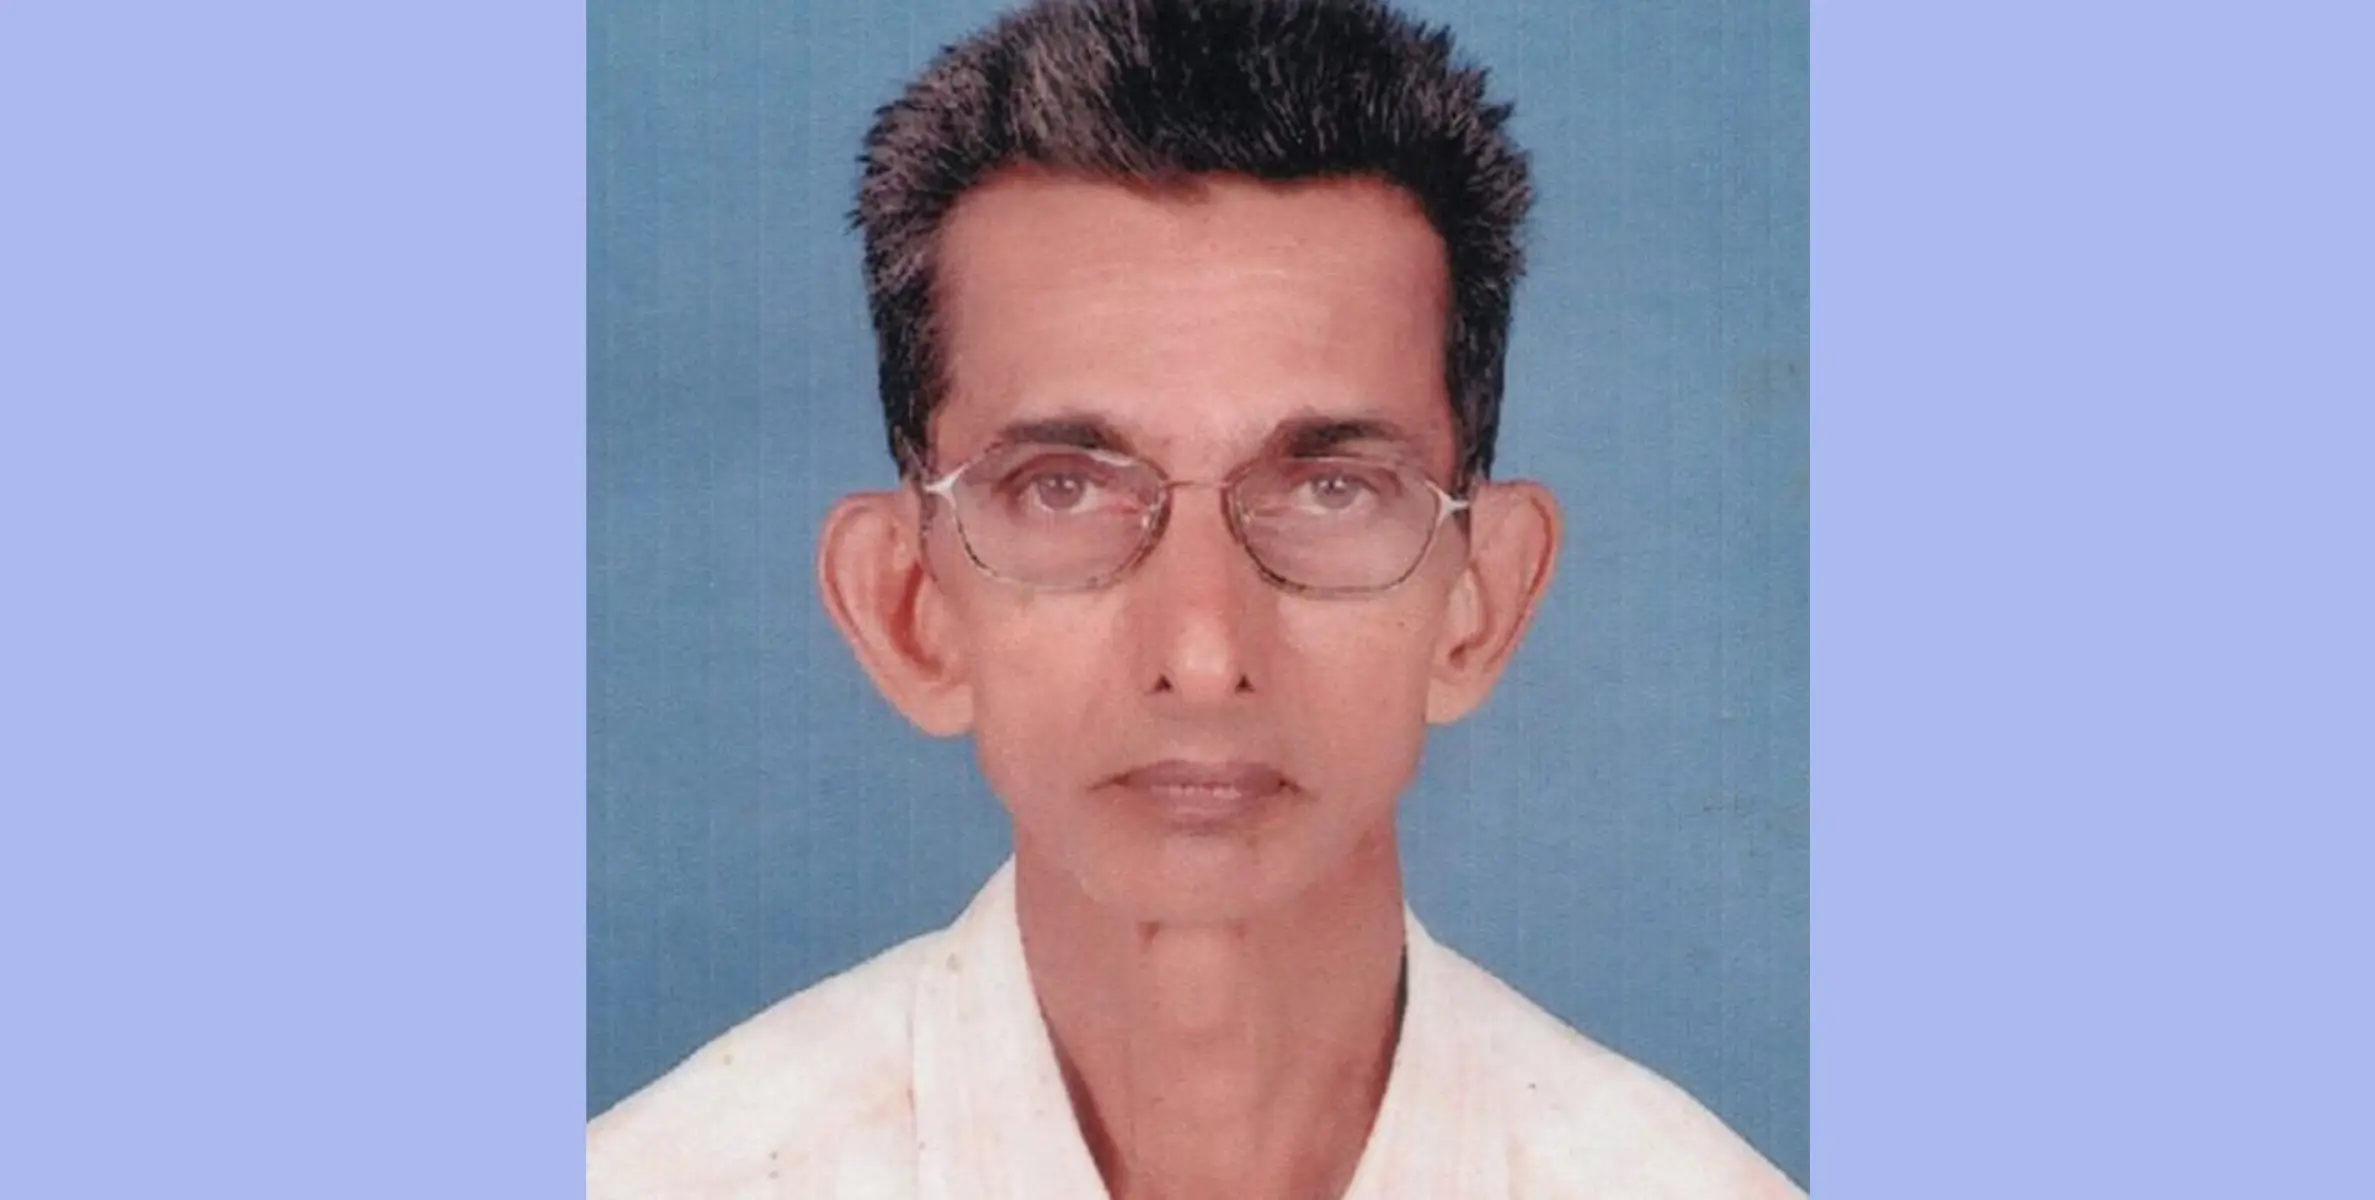 പാമ്പാക്കുട കുരിശിങ്കൽ ജേക്കബ് സൈമൺ (79) റിട്ട. അധ്യാപകൻ (പി. യു. പി. എസ് വേങ്ങല്ലൂർ) നിര്യാതനായി